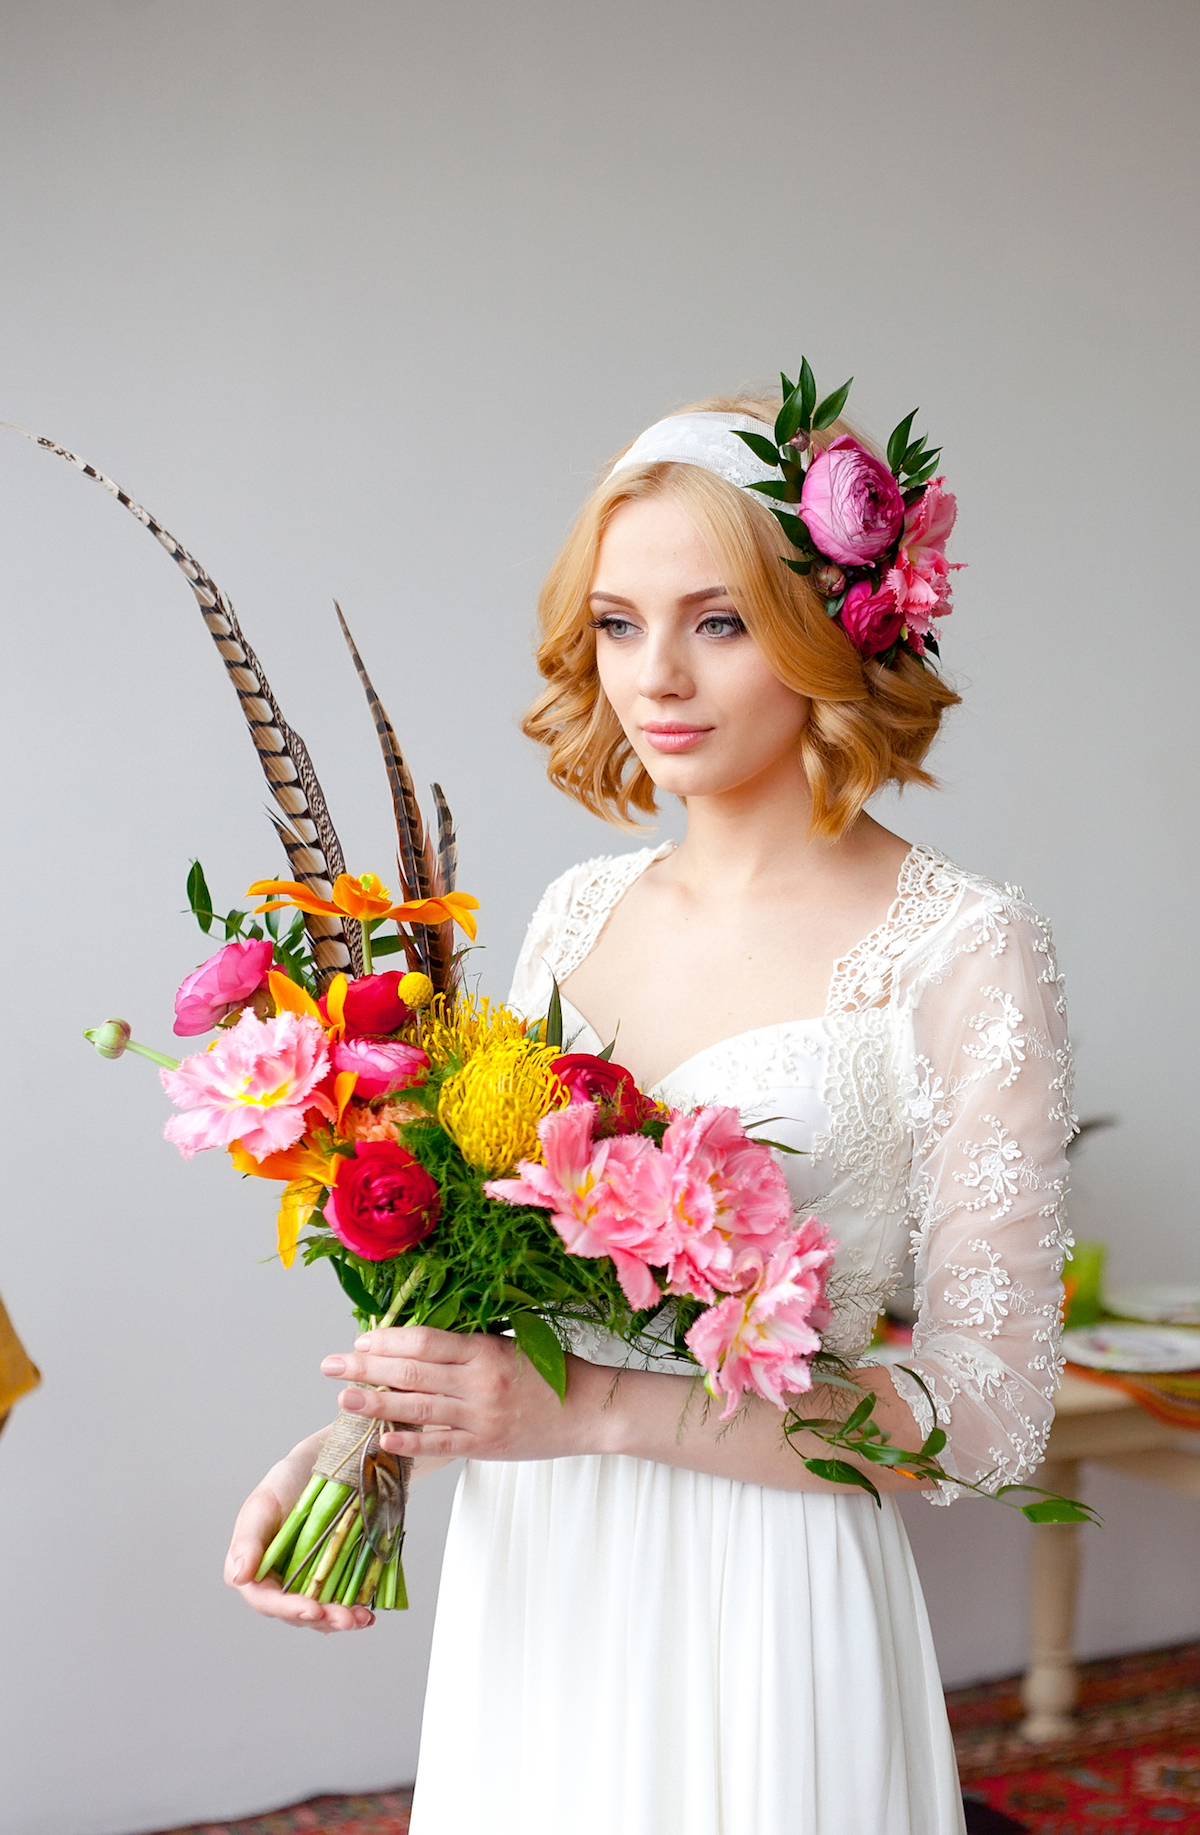 Оформление свадьбы в цветочном стиле